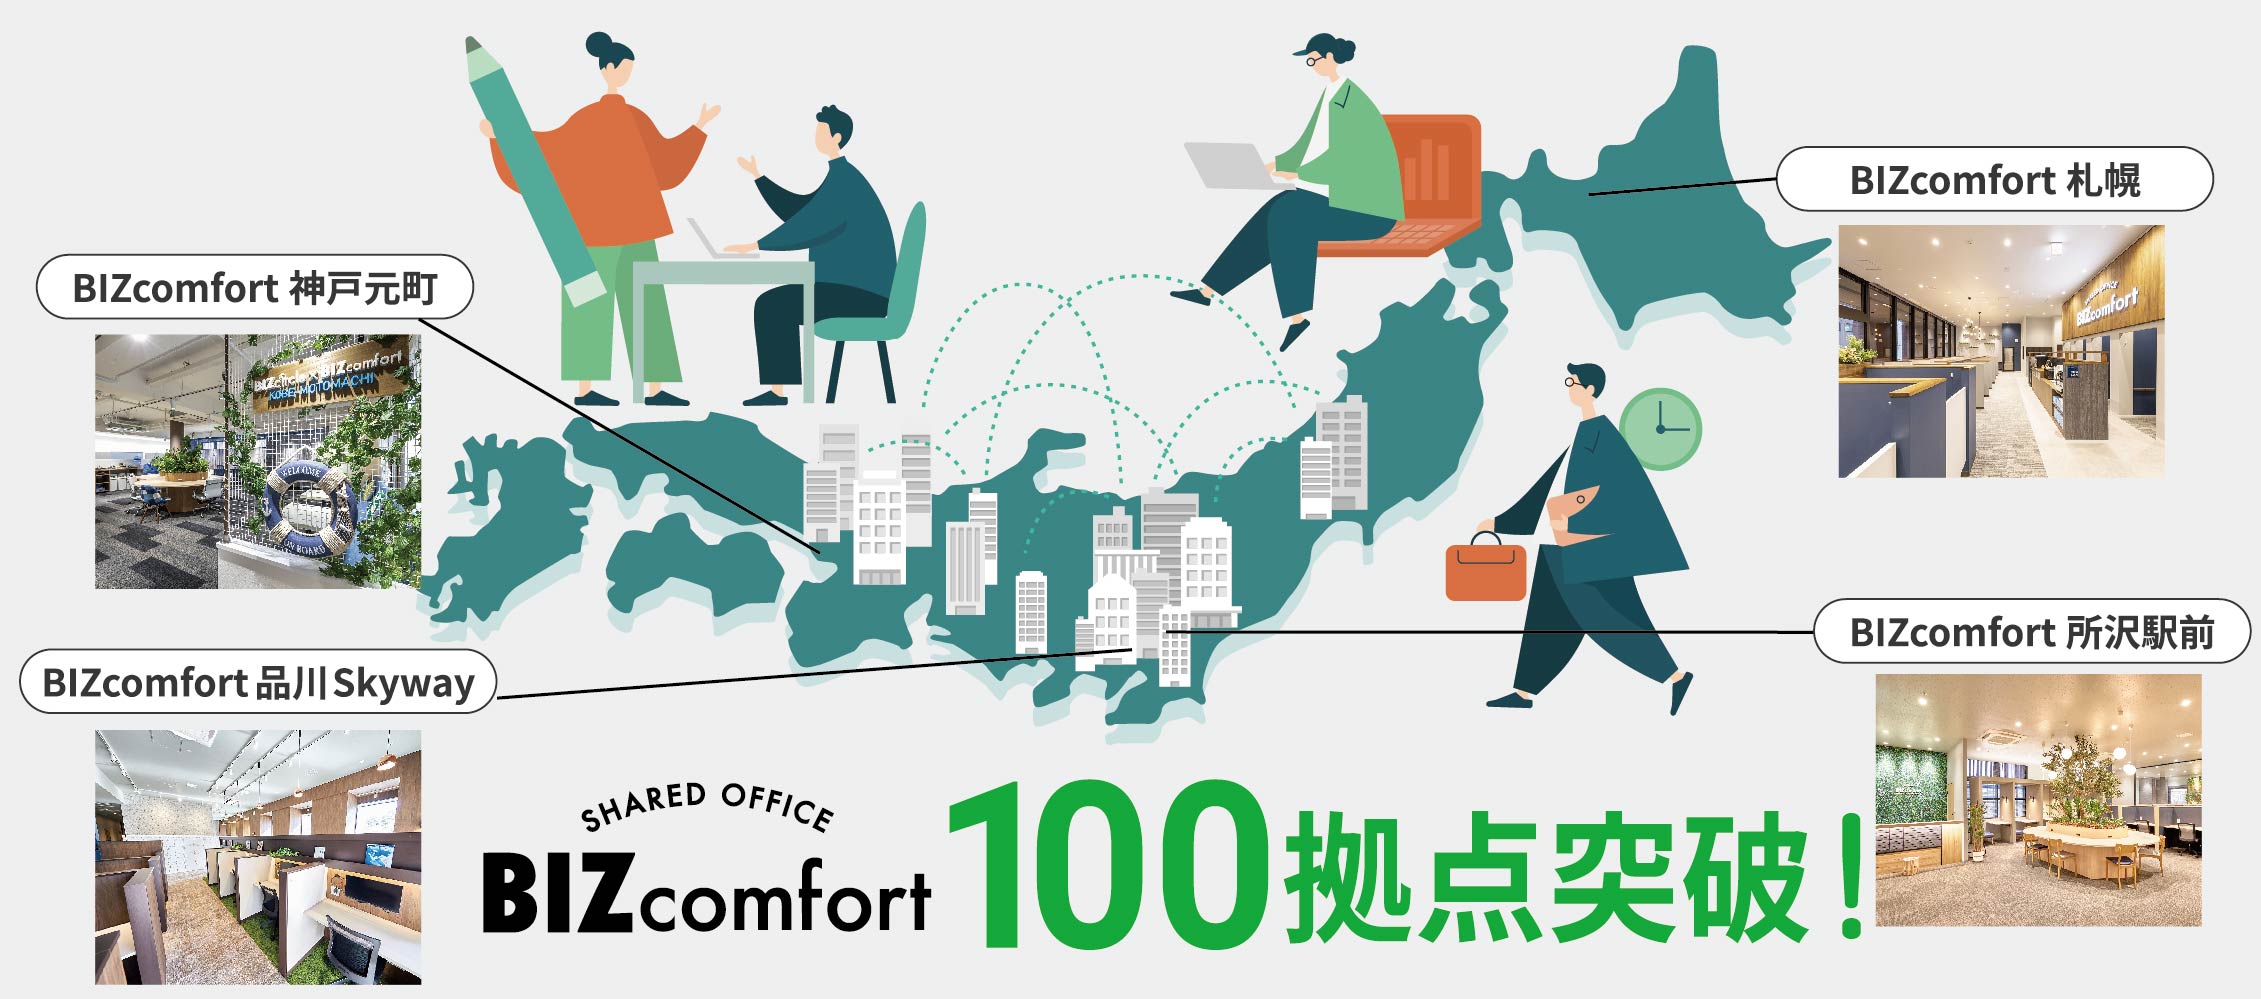 【プレスリリース】BIZcomfort直営店全国100拠点突破！「はたらくをもっと自由に快適に」を応援するシェアオフィス職住近接と空室再生で人にも環境にも優しい空間を実現